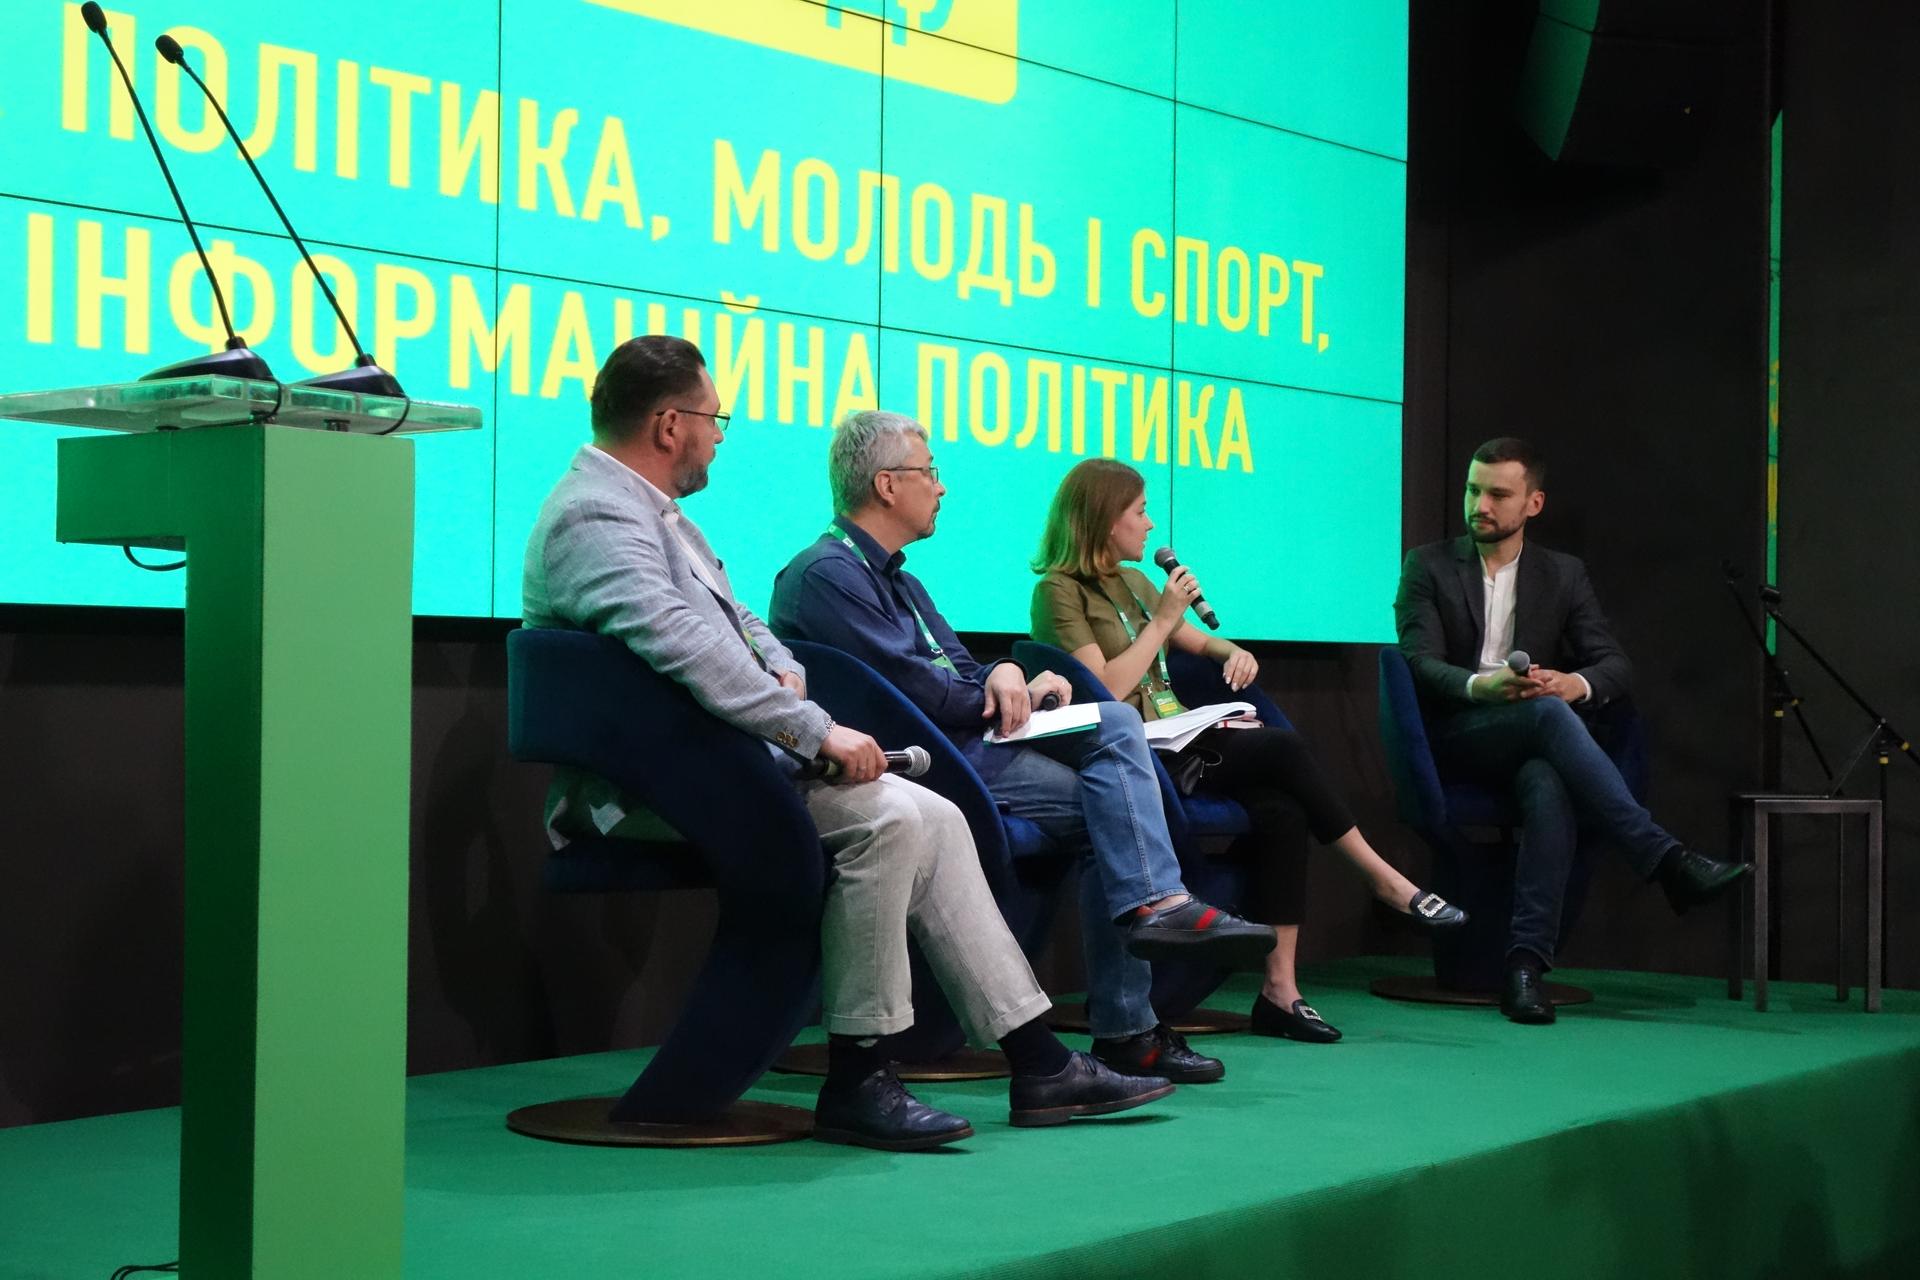 Marina Bardina speaks on a panel with Ukrainian politicians